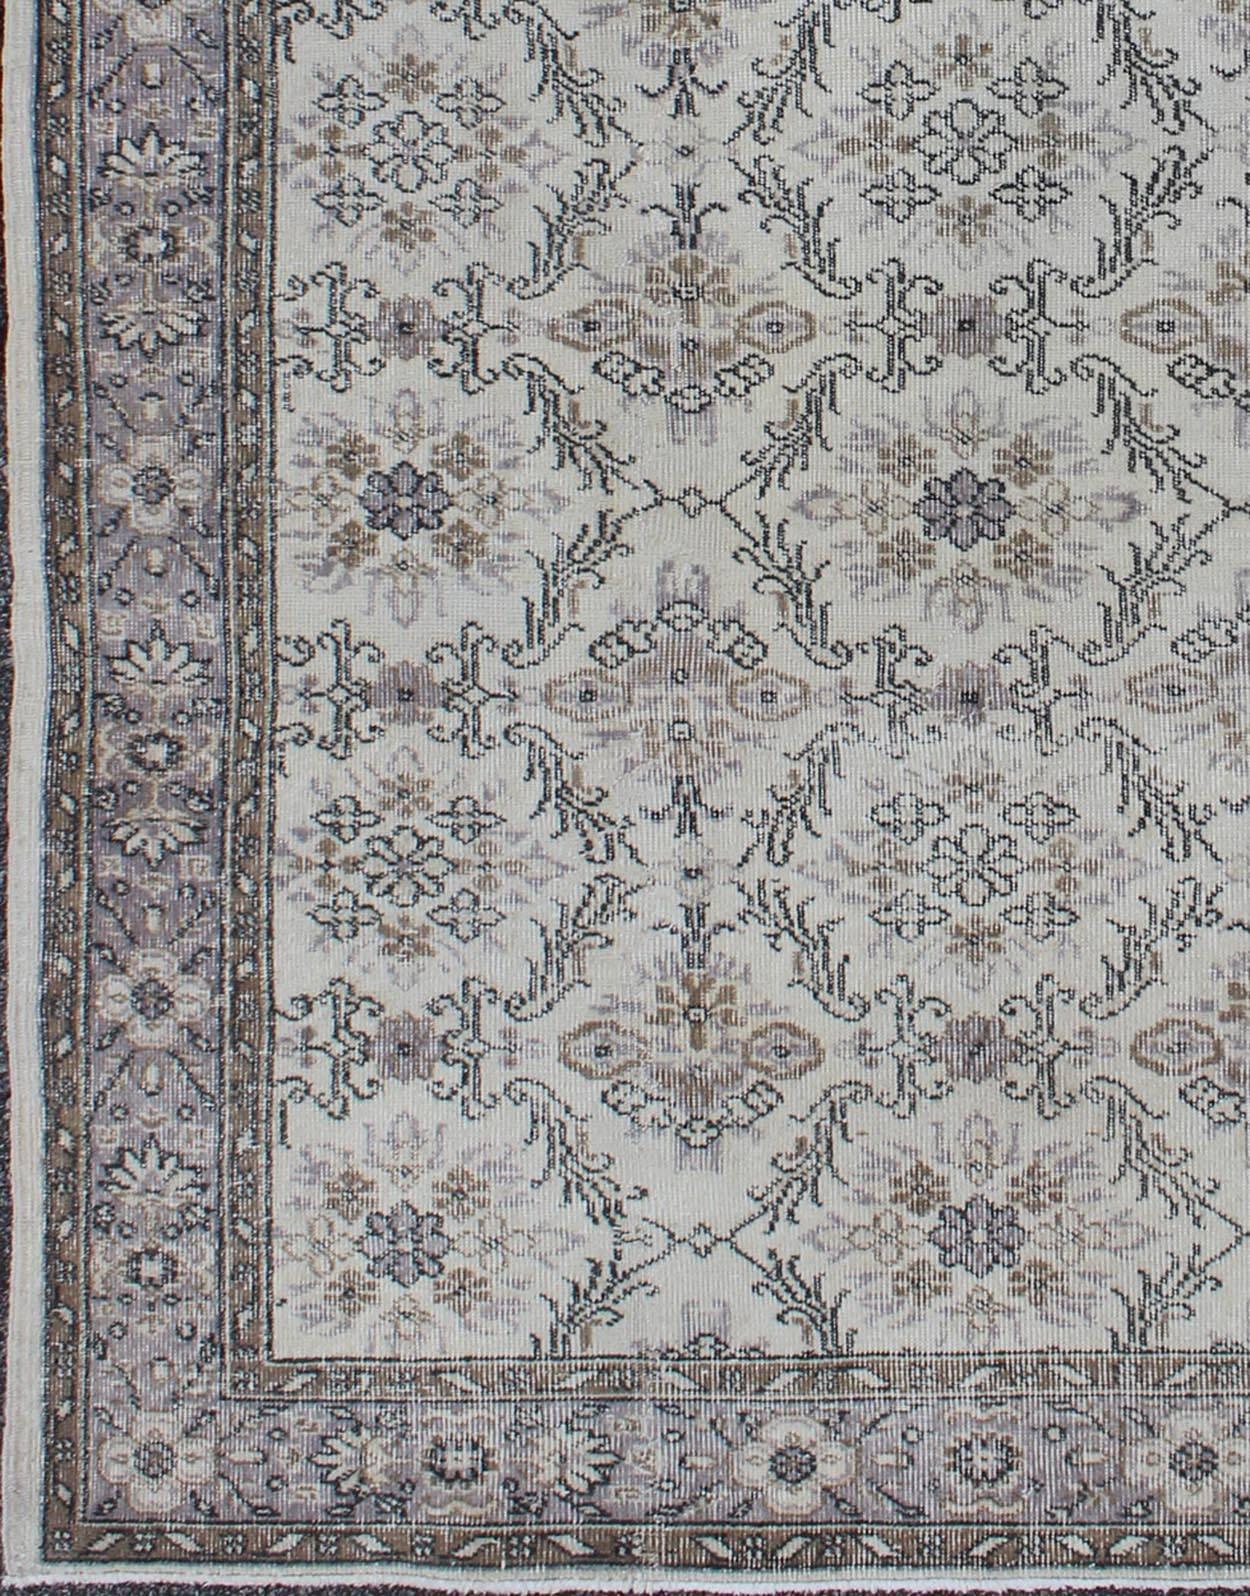 Grauer türkischer Oushak-Teppich aus der Mitte des Jahrhunderts mit stilisiertem Blumenmuster, Teppich EN-140563, Herkunftsland / Art: Türkei / Oushak, um 1950

Stilisierte florale Motive sind in einem sich wiederholenden Allover-Muster auf diesem